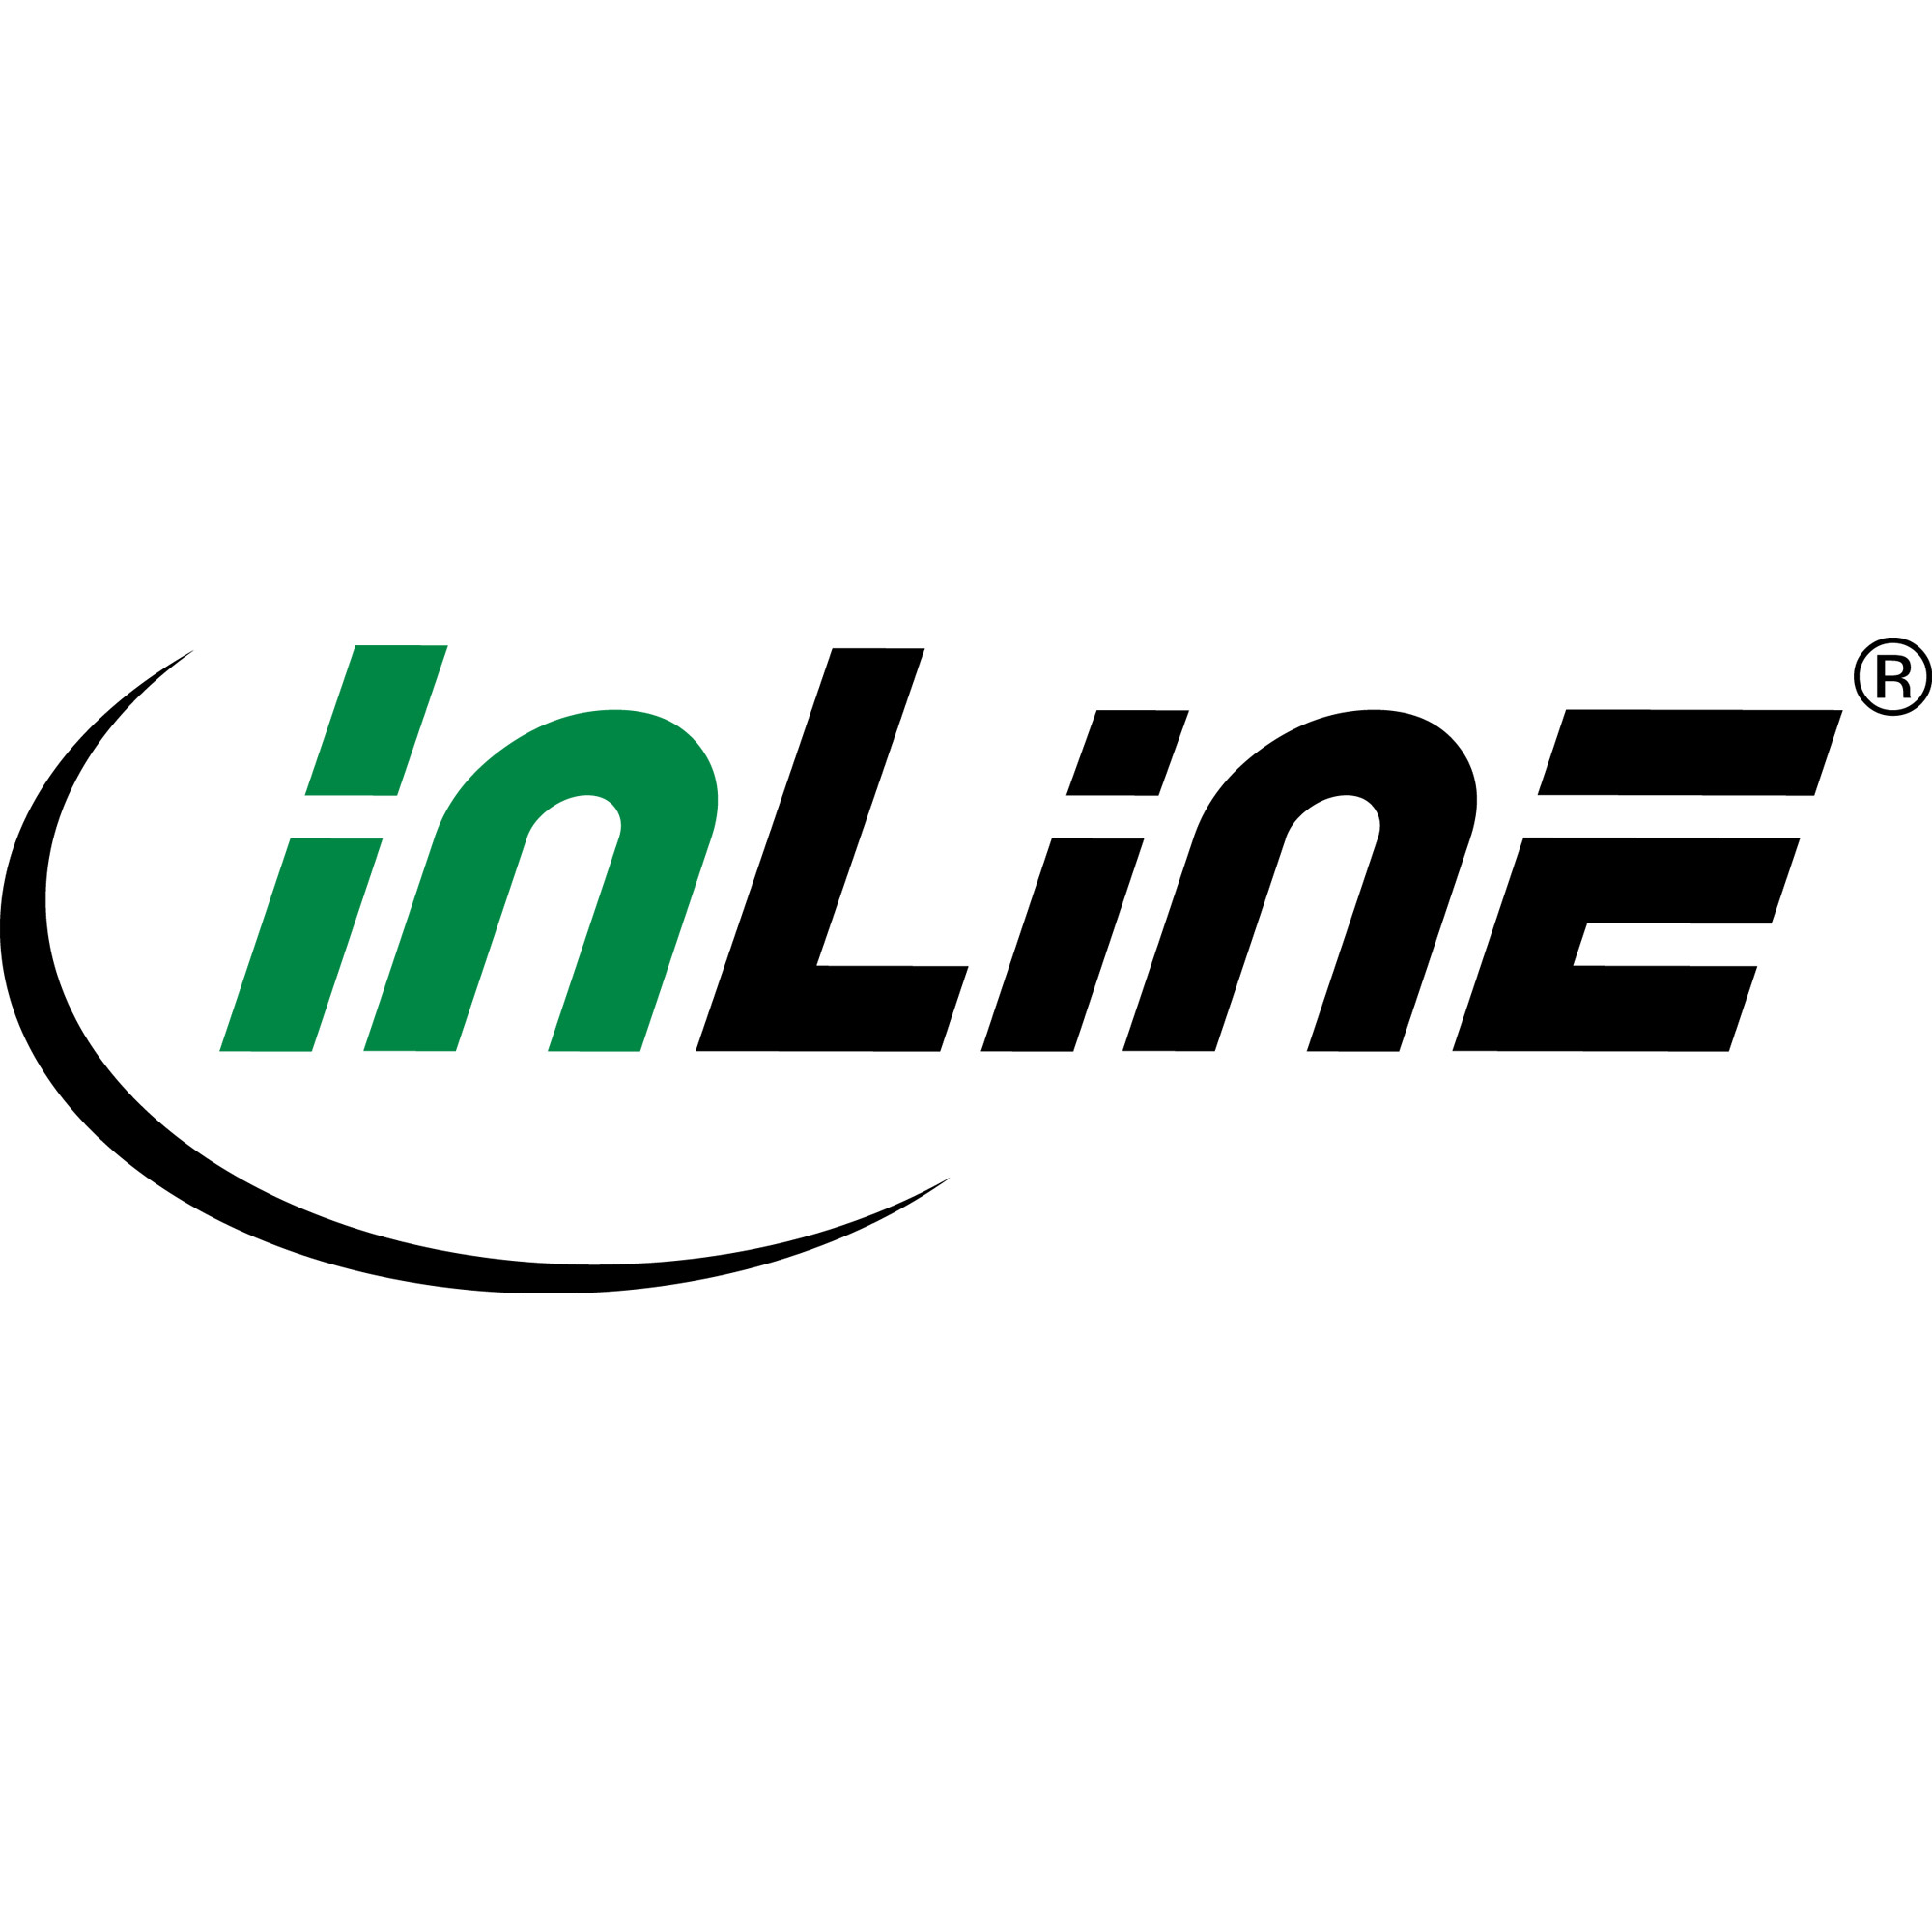 InLine Hub - Smart - 1 x SuperSpeed USB 3.0 + 6 x USB 2.0 + 1 x USB